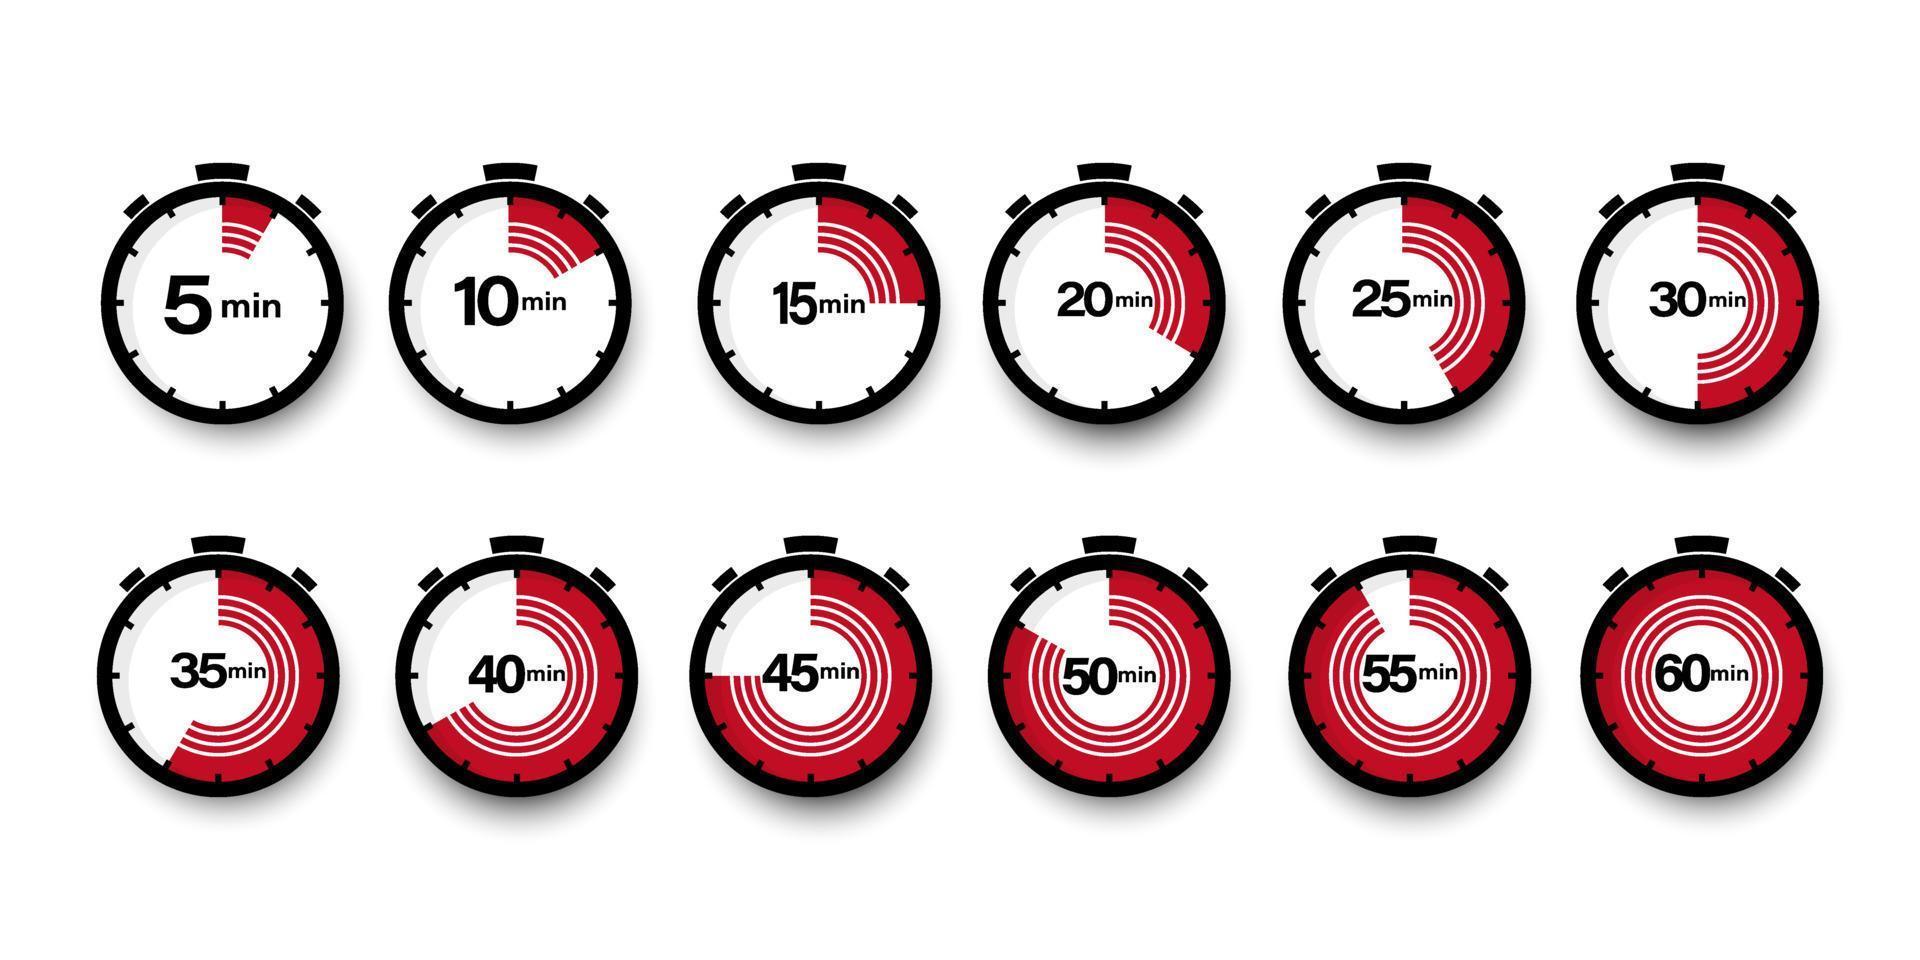 reeks van tijdopnemers. 5, 10, 15, 20, 25, 30, 35, 40, 45, 50, 55, en 60 minuten. countdown timer pictogrammen set. geïsoleerd vector illustratie.